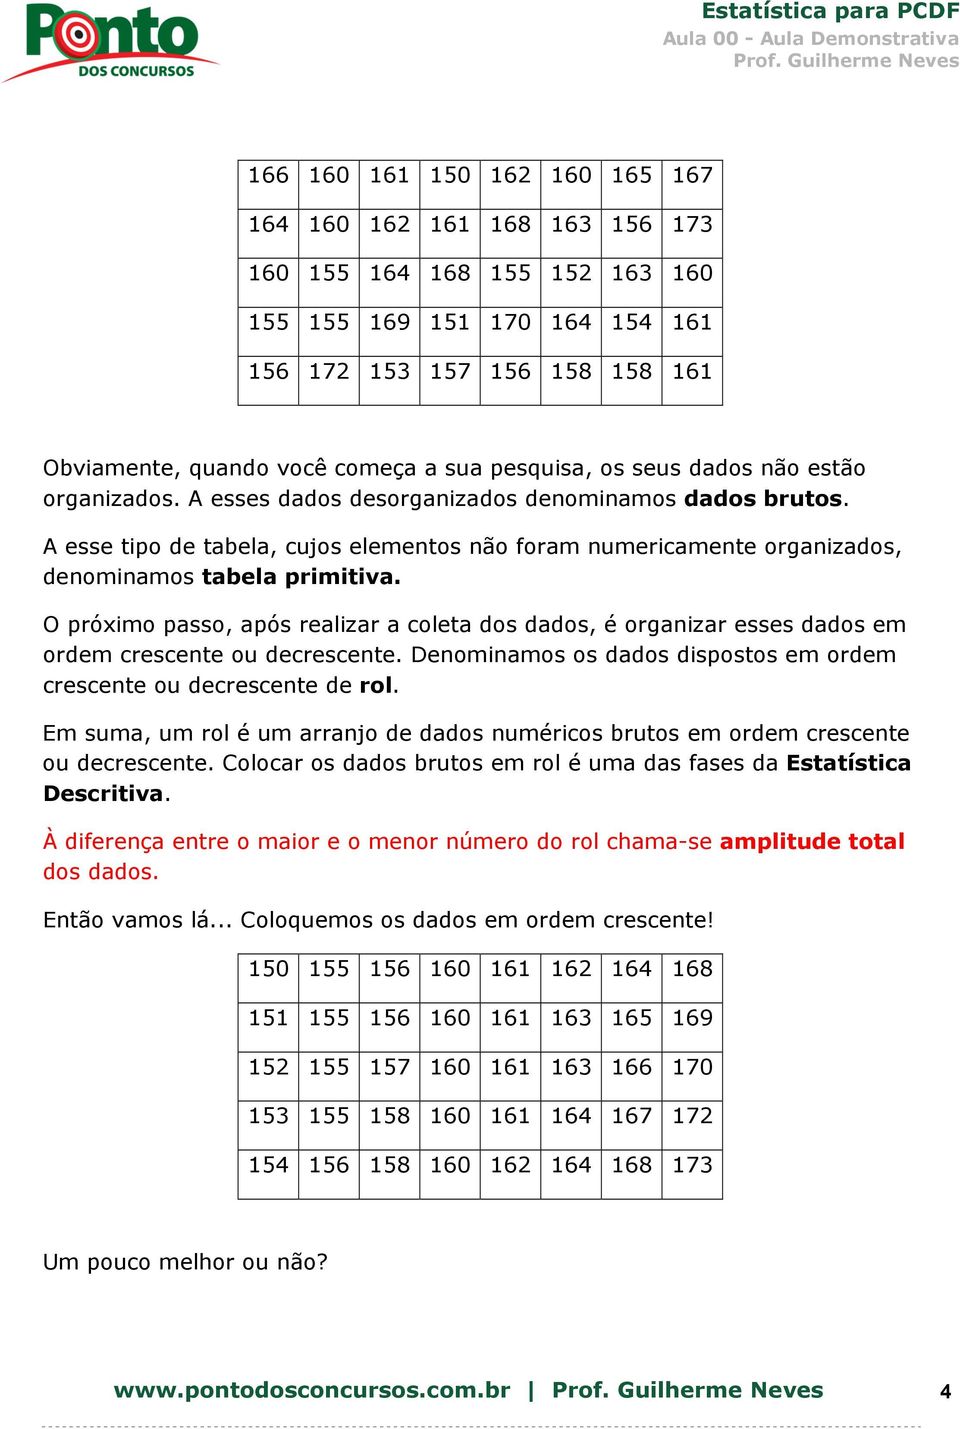 A esse tipo de tabela, cujos elementos não foram numericamente organizados, denominamos tabela primitiva.